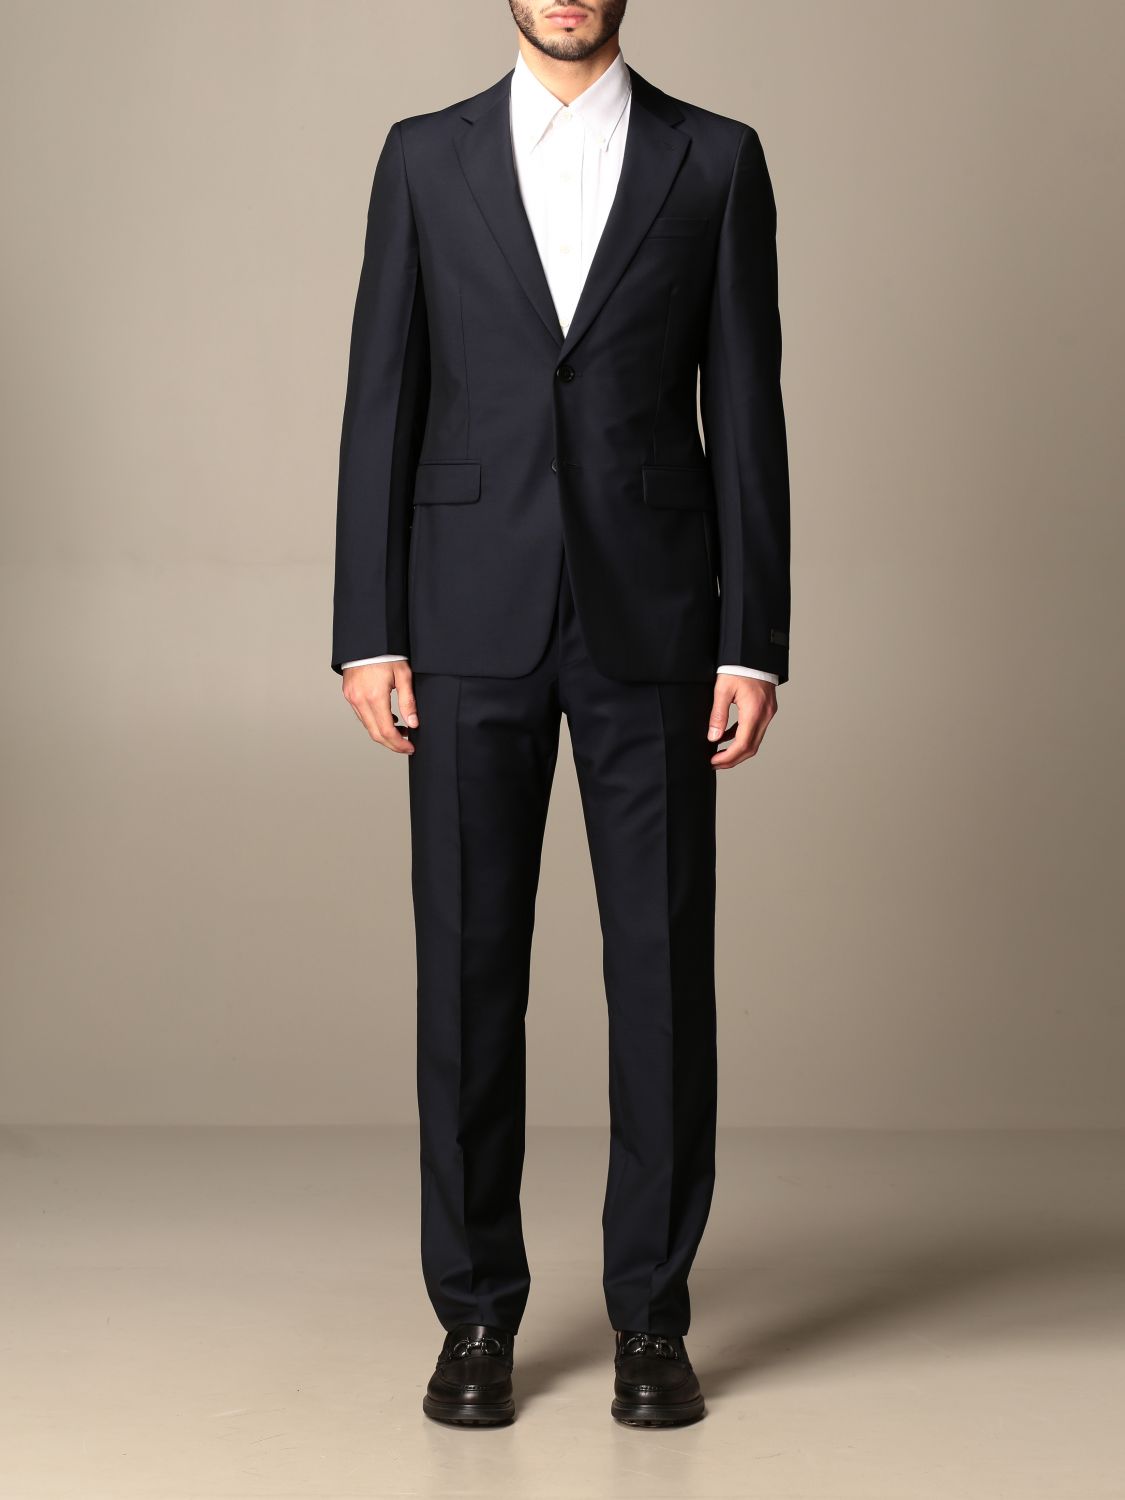 PRADA: suit for men - Blue | Prada suit UAF420 D39 online at GIGLIO.COM